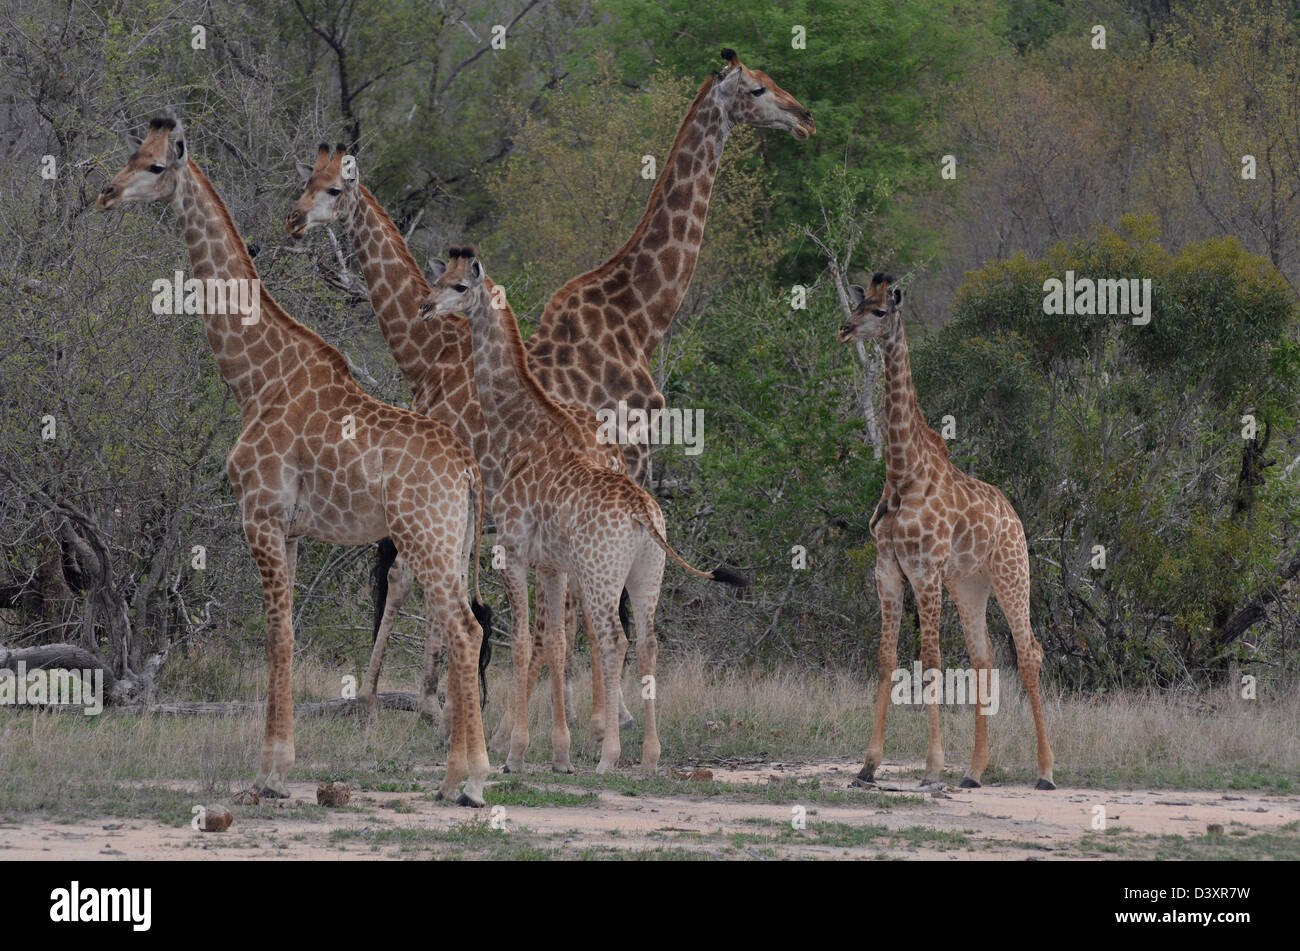 Foto di Africa, la giraffa nel gruppo alert rivolto lontano dalla fotocamera Foto Stock